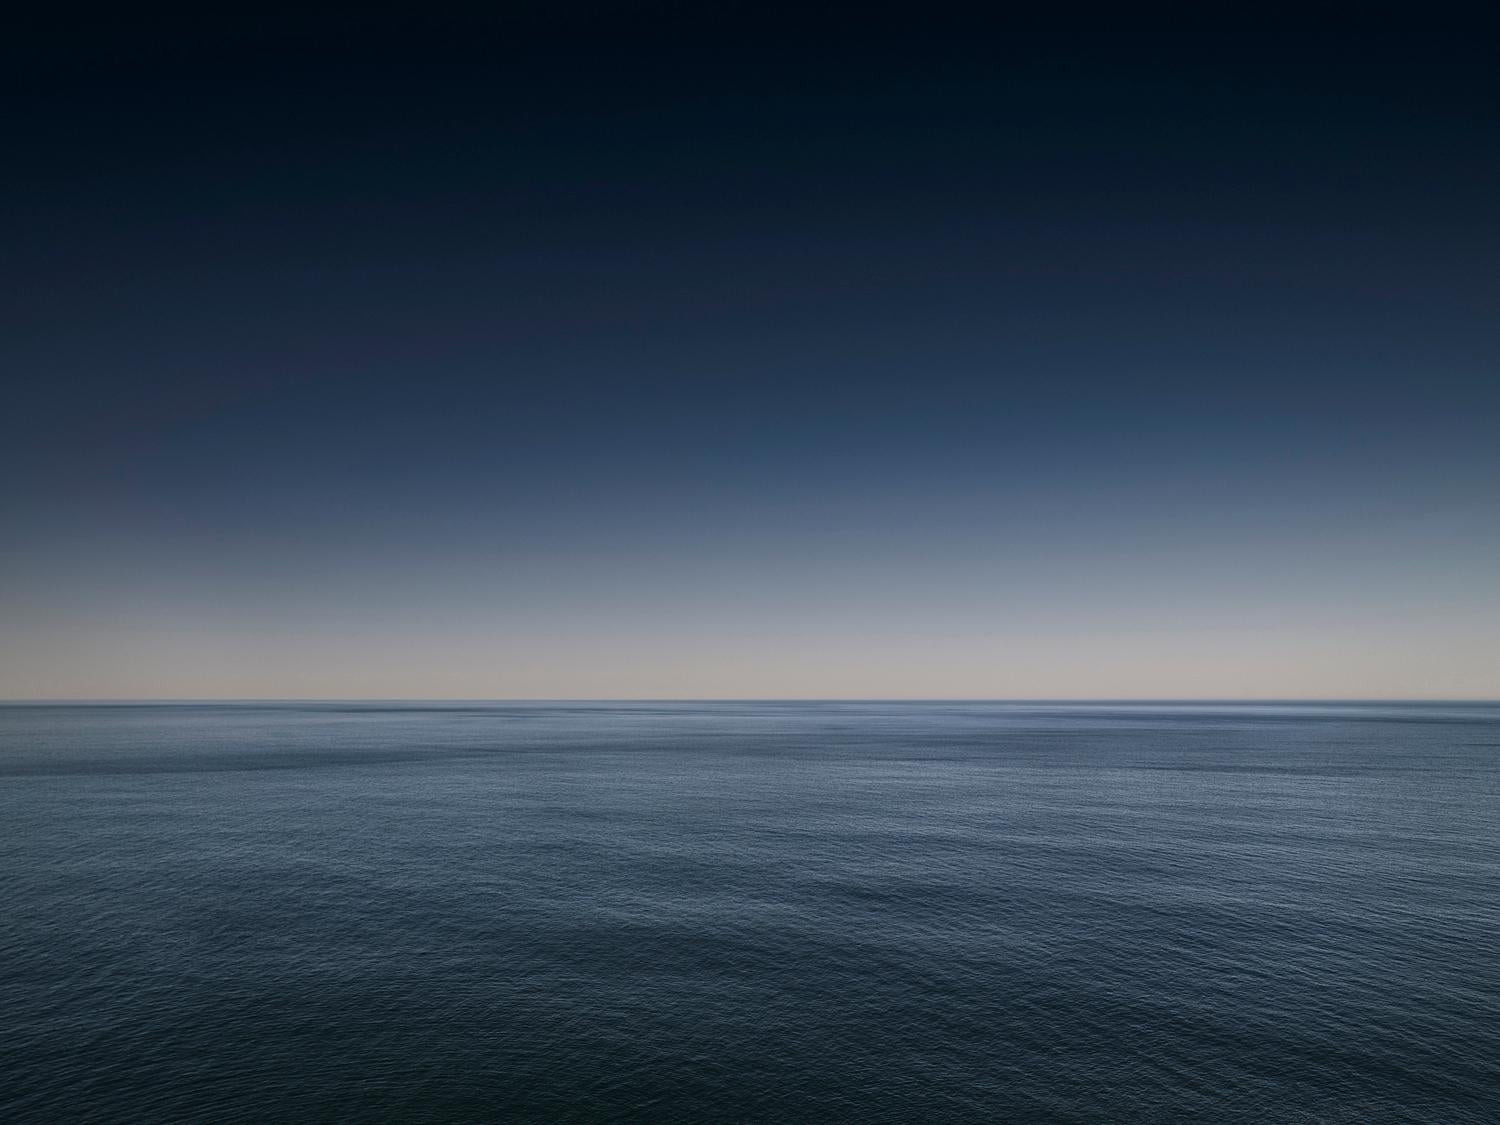 SEASCAPE I ( gerahmt ) von Frank Schott
aus einer Serie von Fotografien, die die blaue Farbpalette des Ozeans einfangen

30 x 40 Zoll / 76cm x 102cm
auflage von 25
vom Künstler signiertes + nummeriertes Echtheitszertifikat
gerahmt

